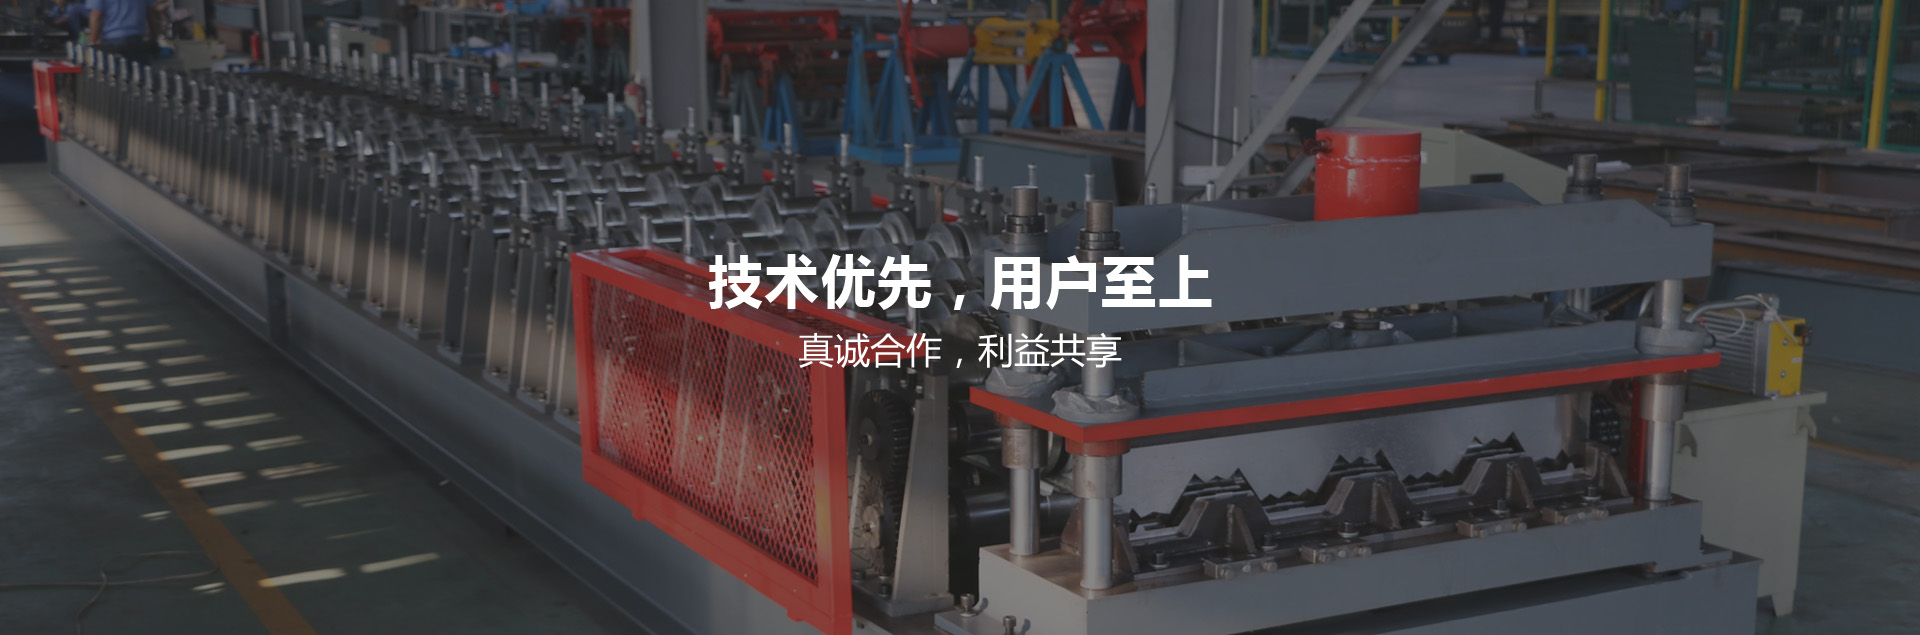 Jiangsu Yuanding Science & Technology Co.,Ltd.